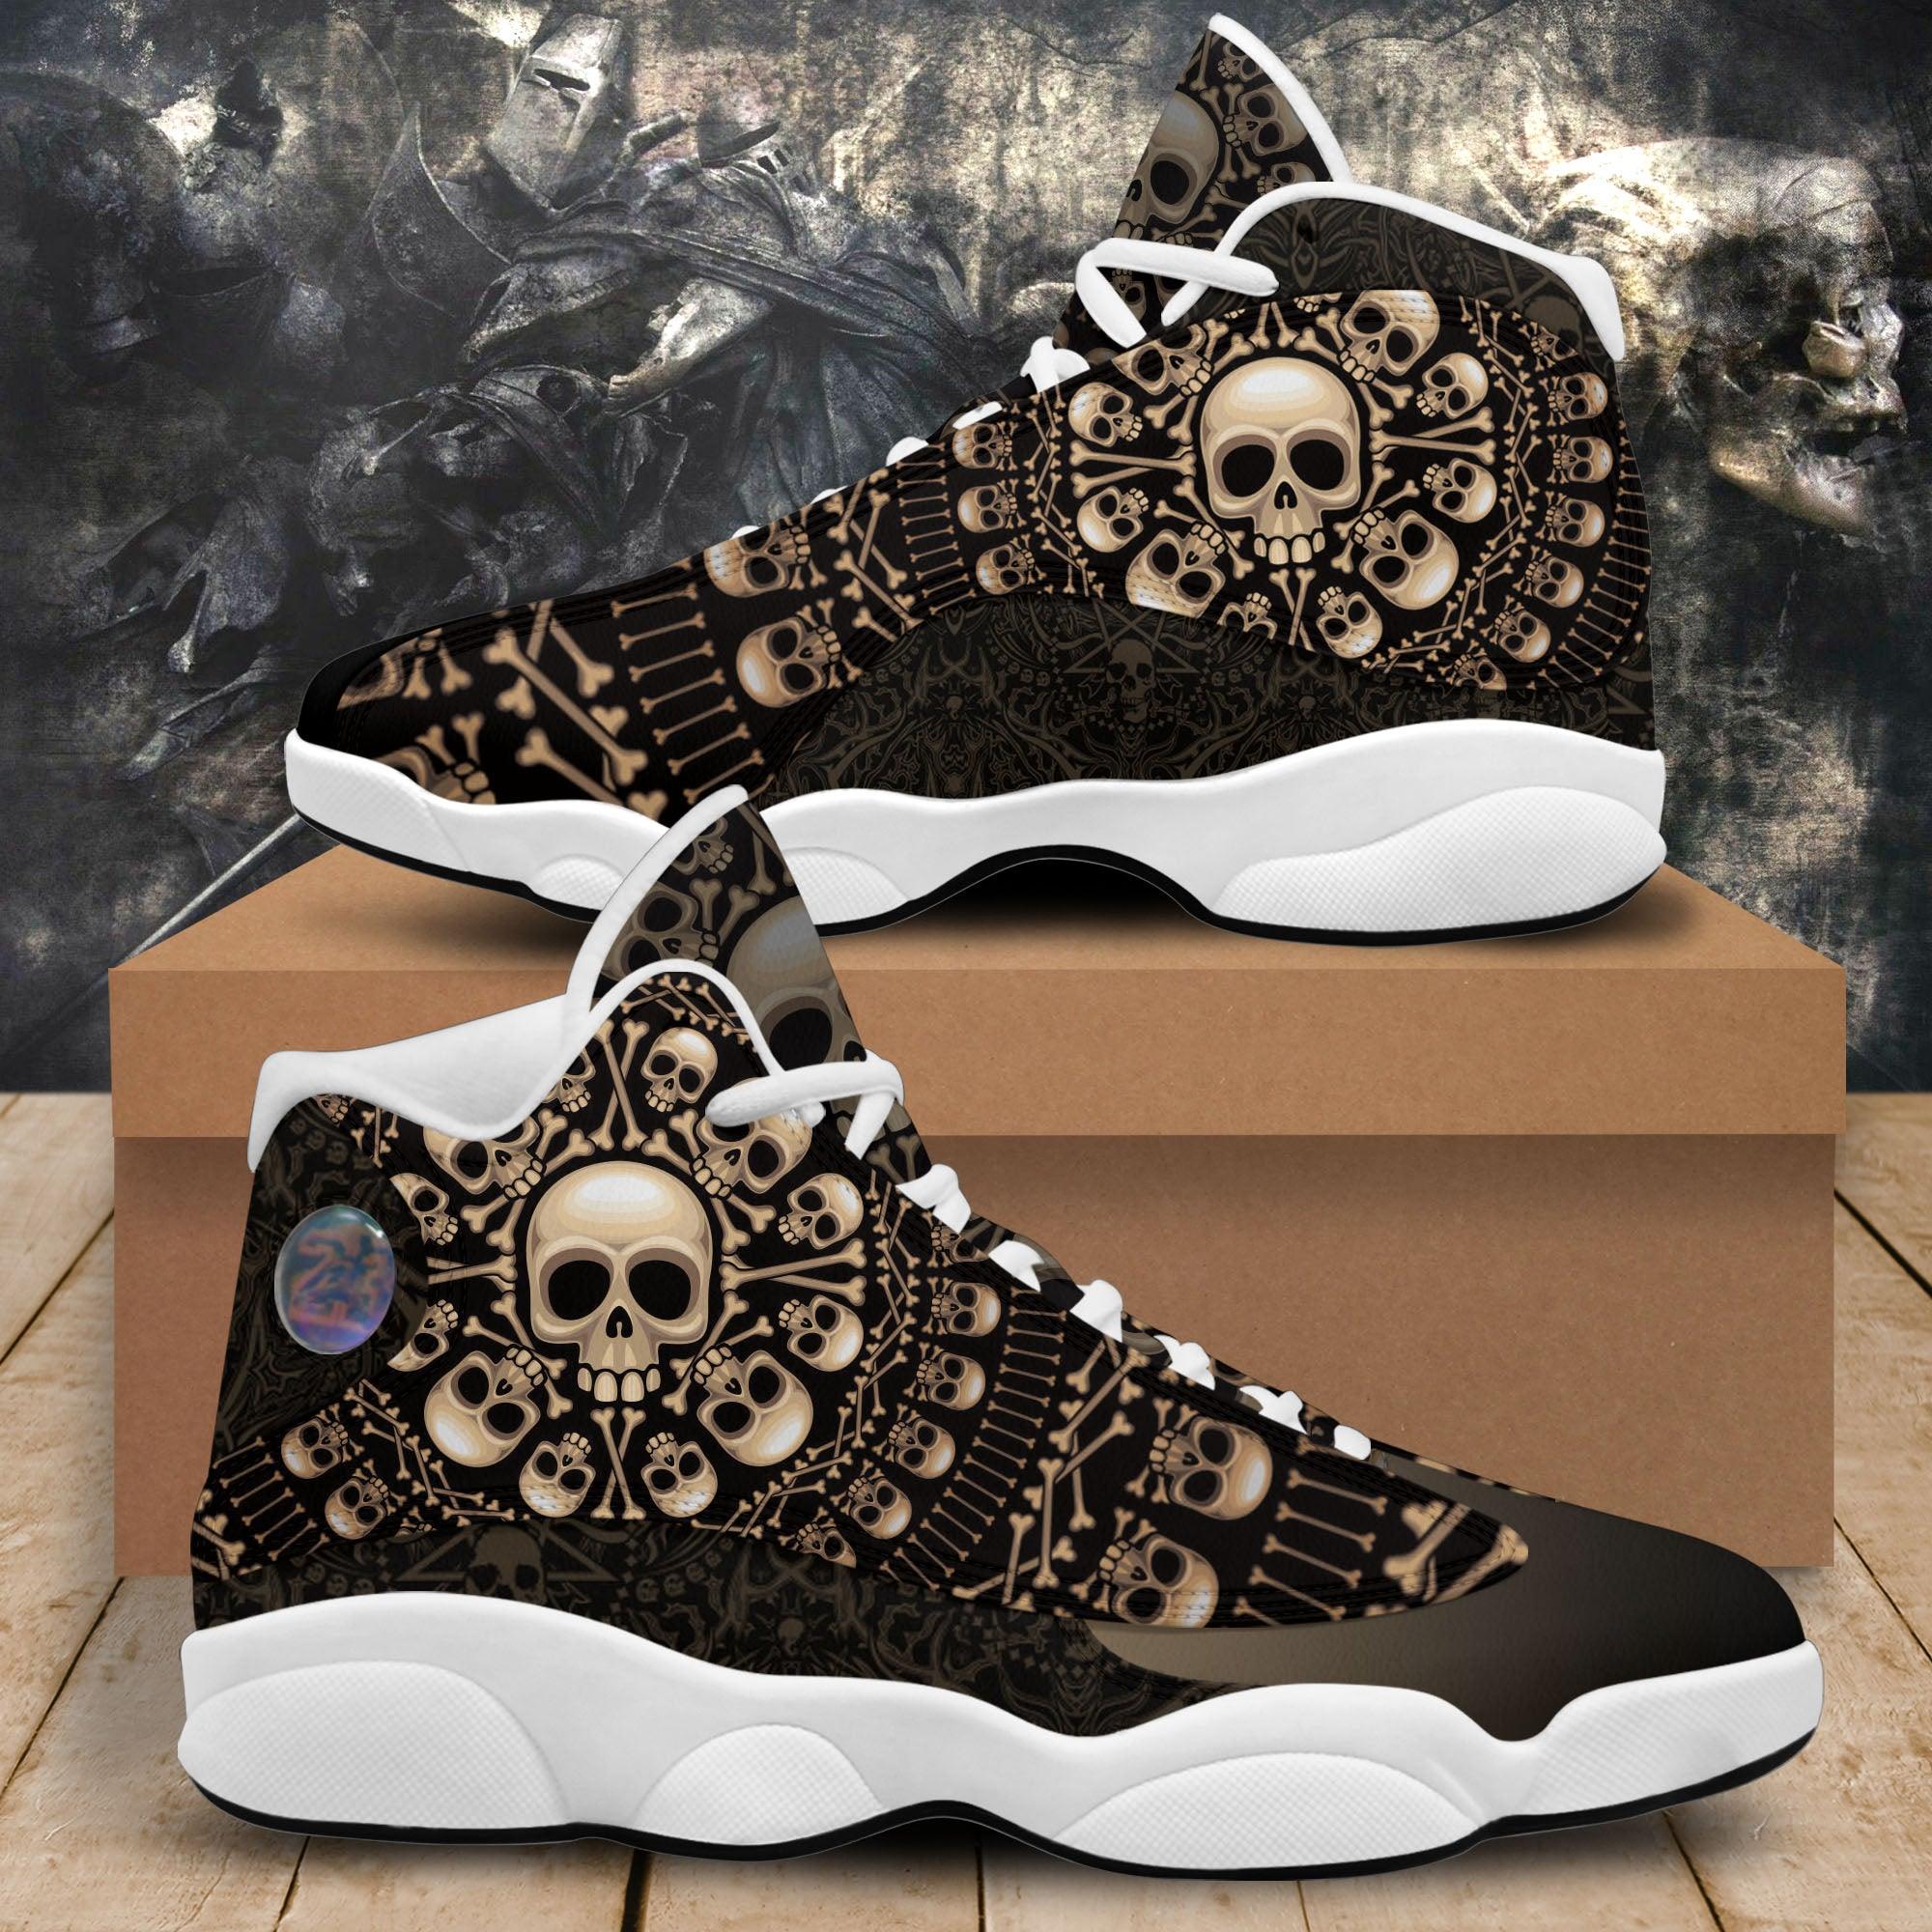 Rosette consist skulls and bones Women's Sneaker Shoes - Wonder Skull